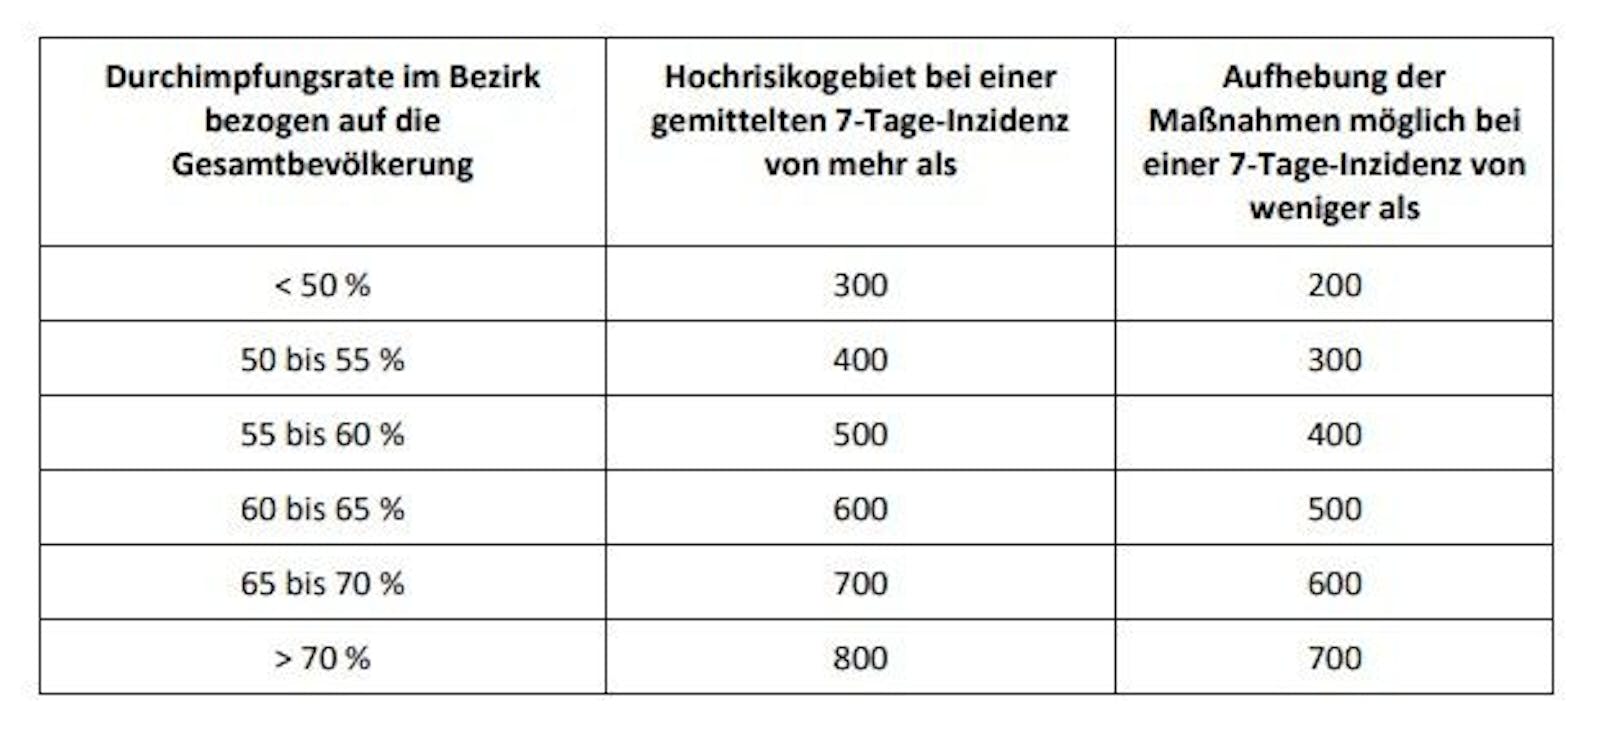 Da die Impfquote in Braunau unter 50 Prozent liegt, werden die Maßnahmen erst aufgehoben, wenn die Inzidenz auf unter 200 sinkt.